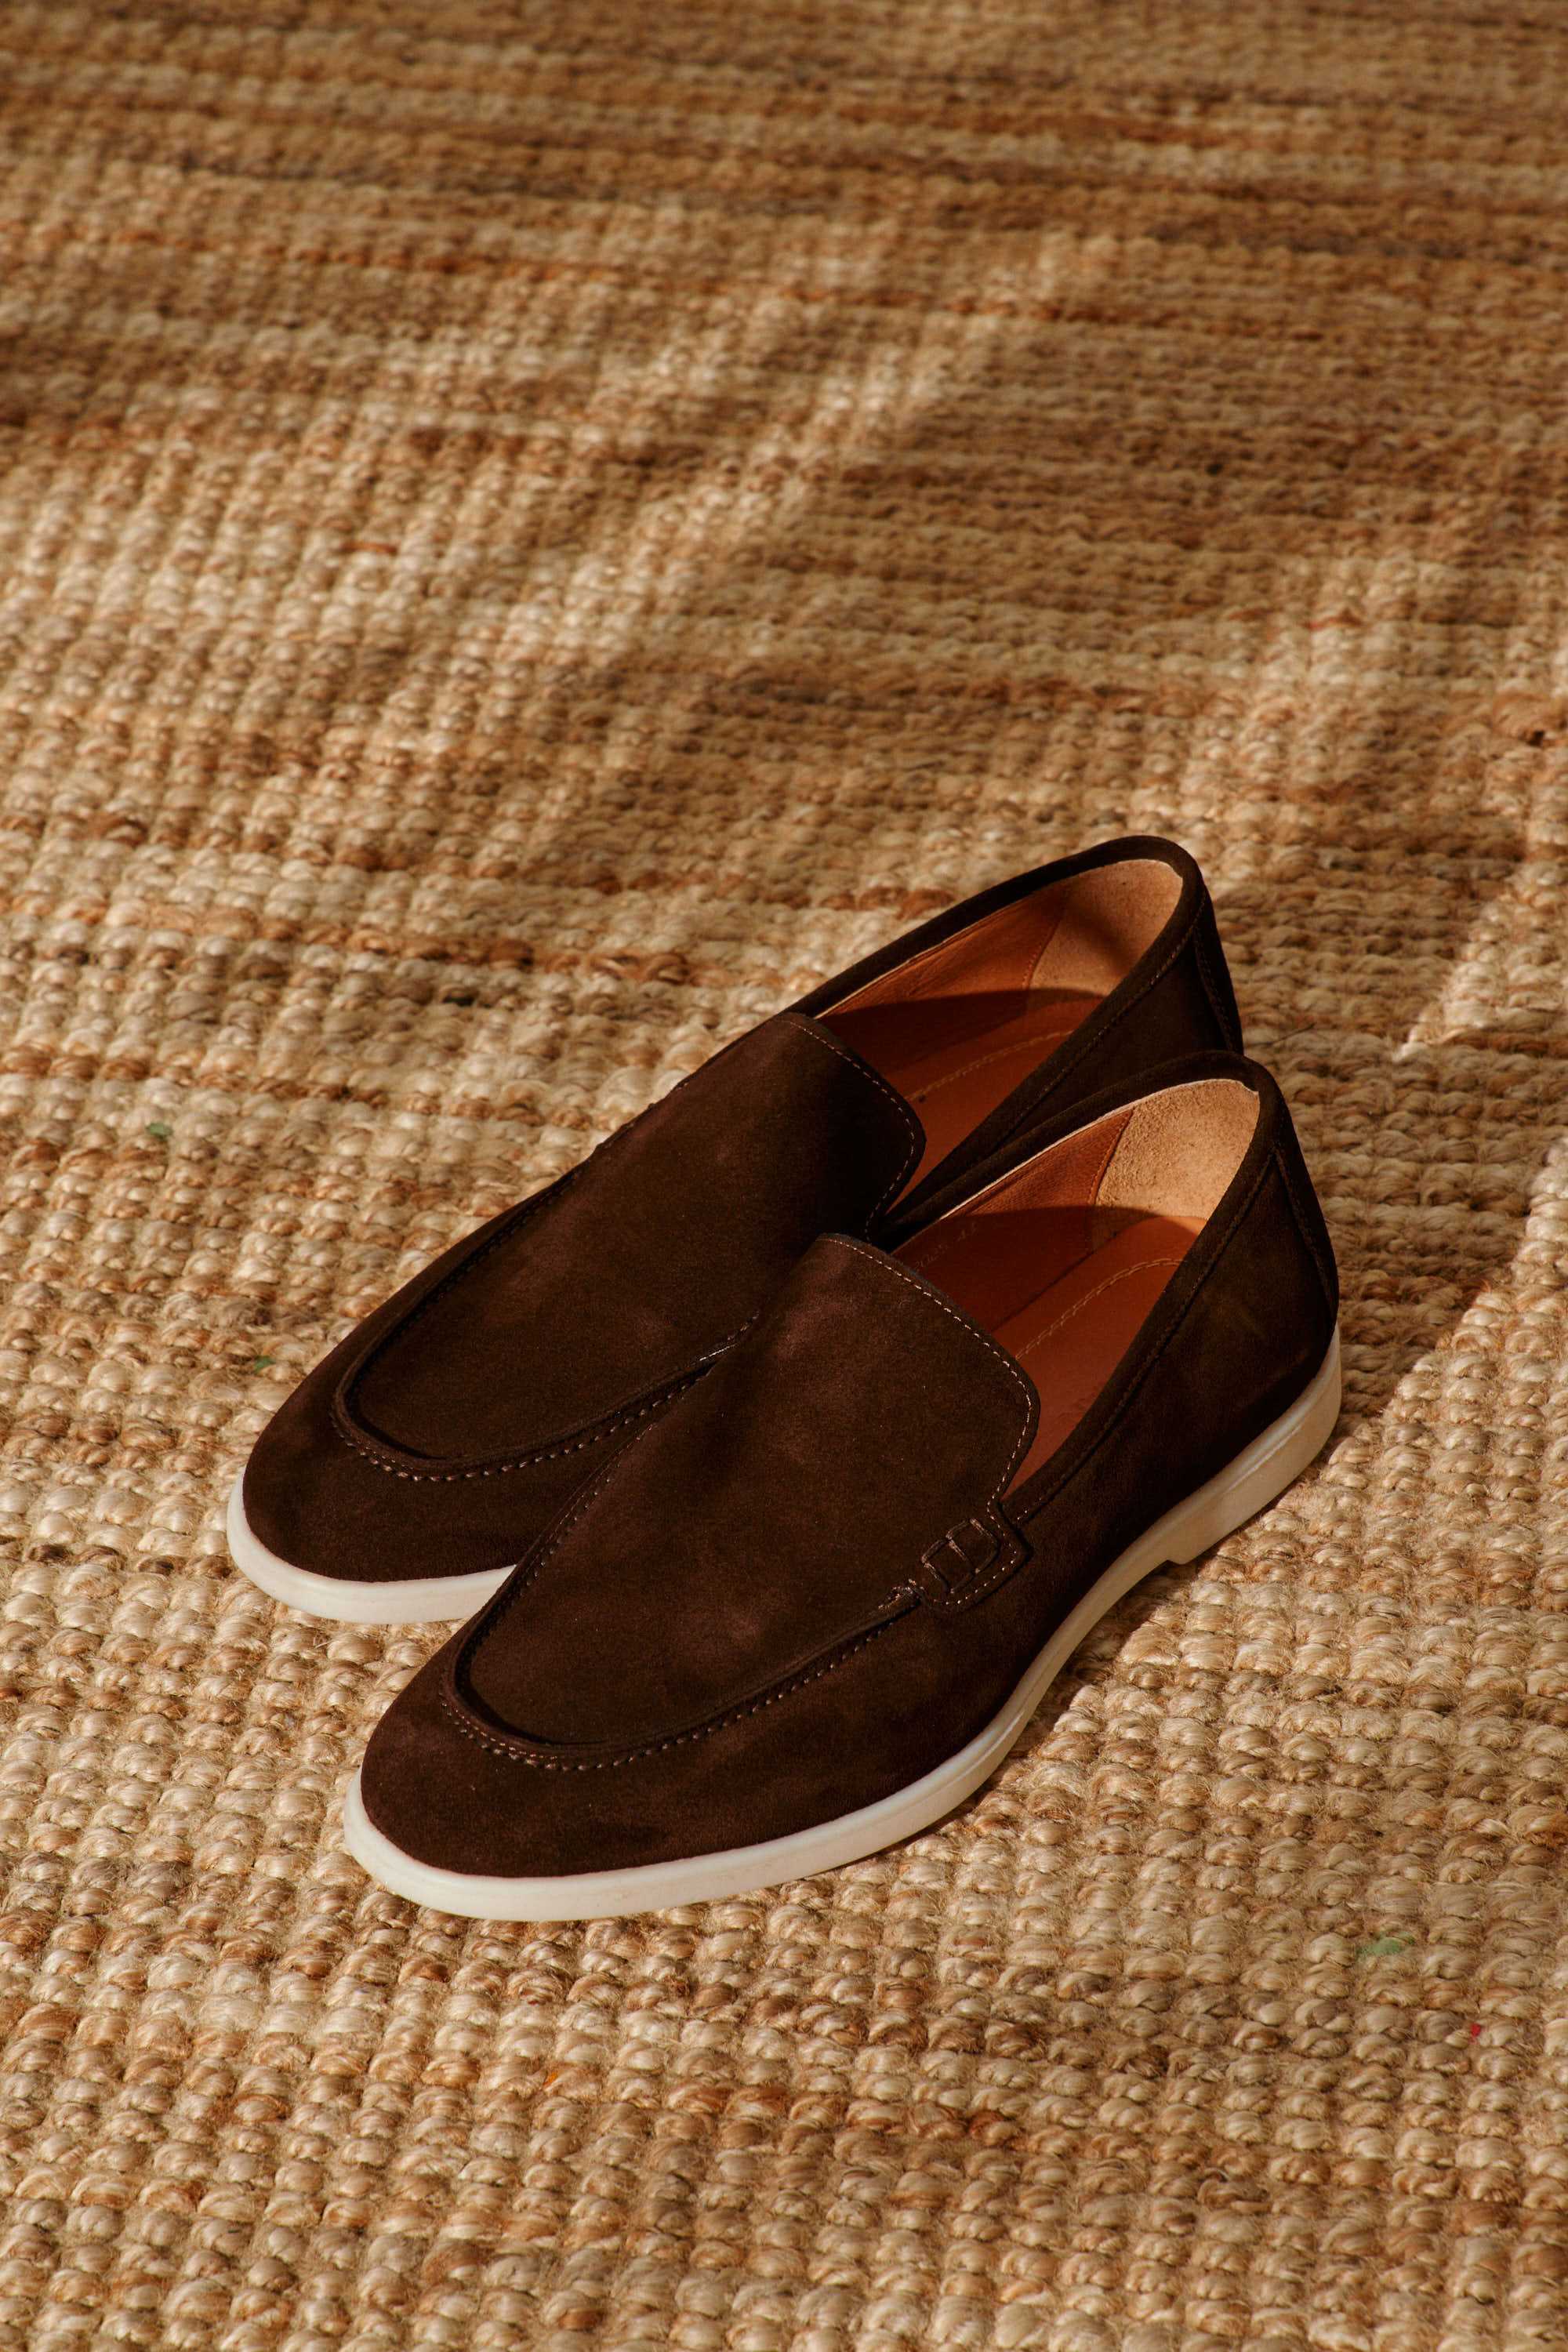 Туфли мужские коричневые замшевые лоферы (summer walk loafers)